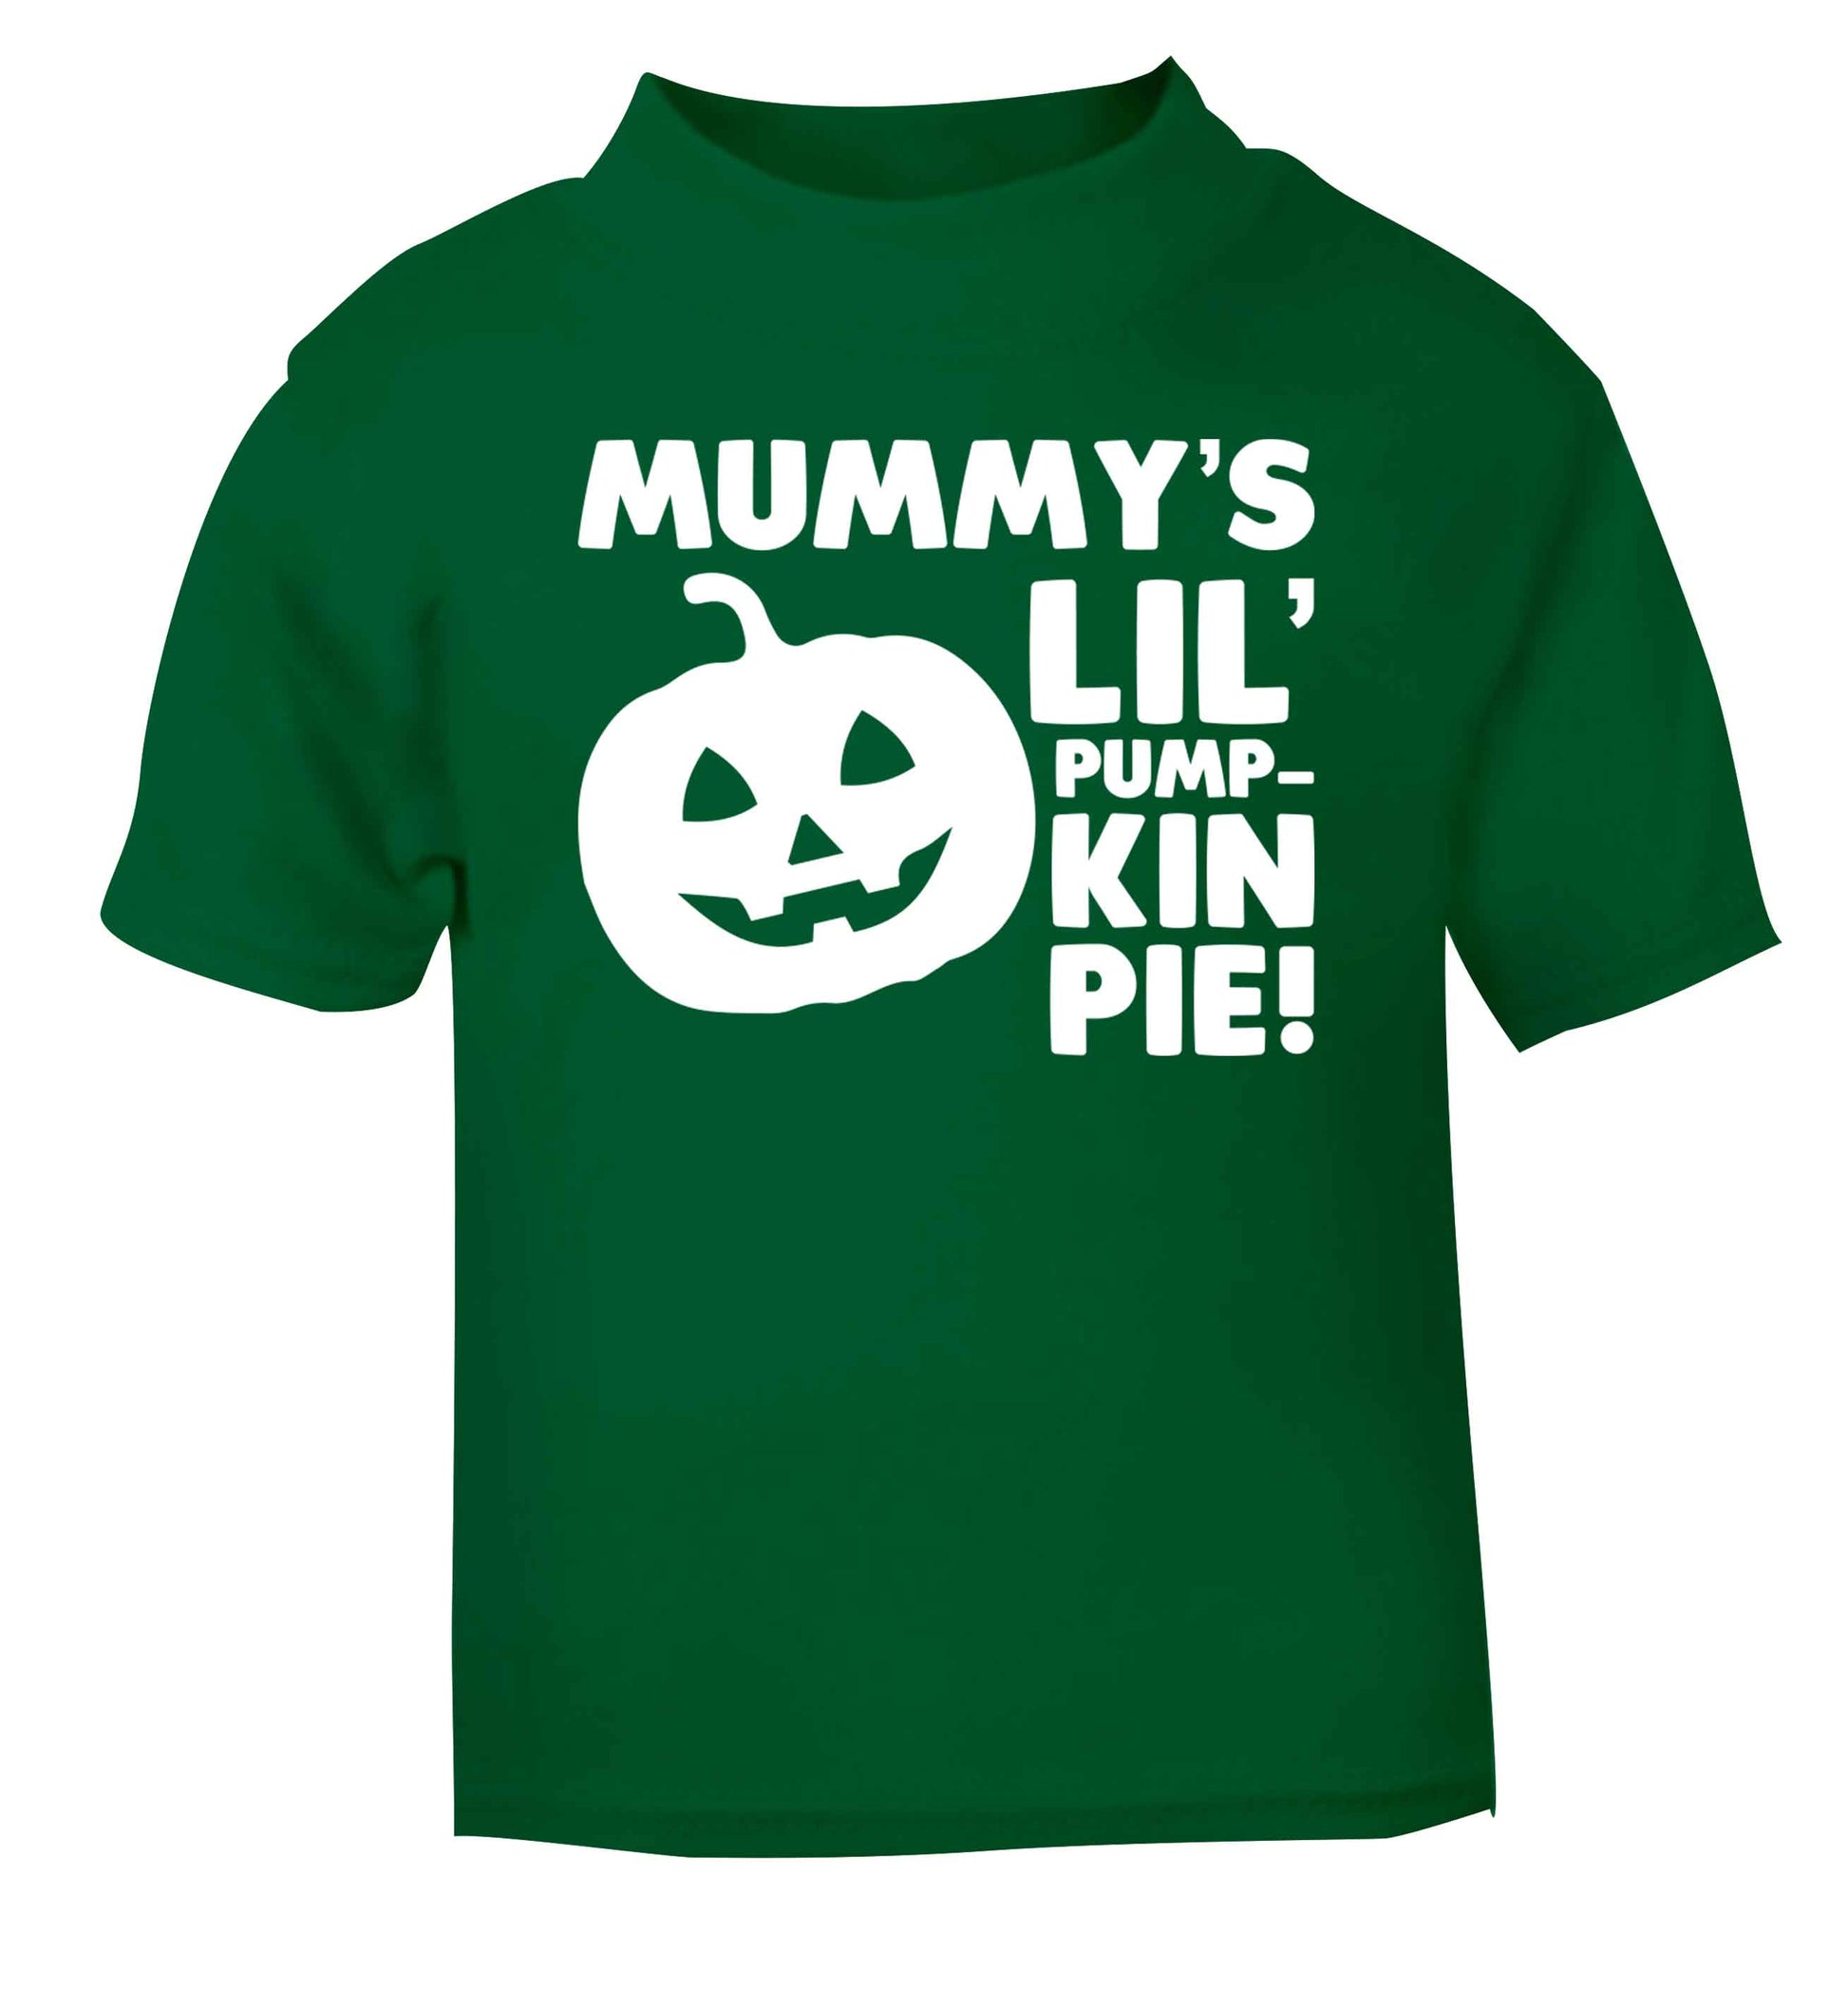 Mummy's lil' pumpkin pie green baby toddler Tshirt 2 Years